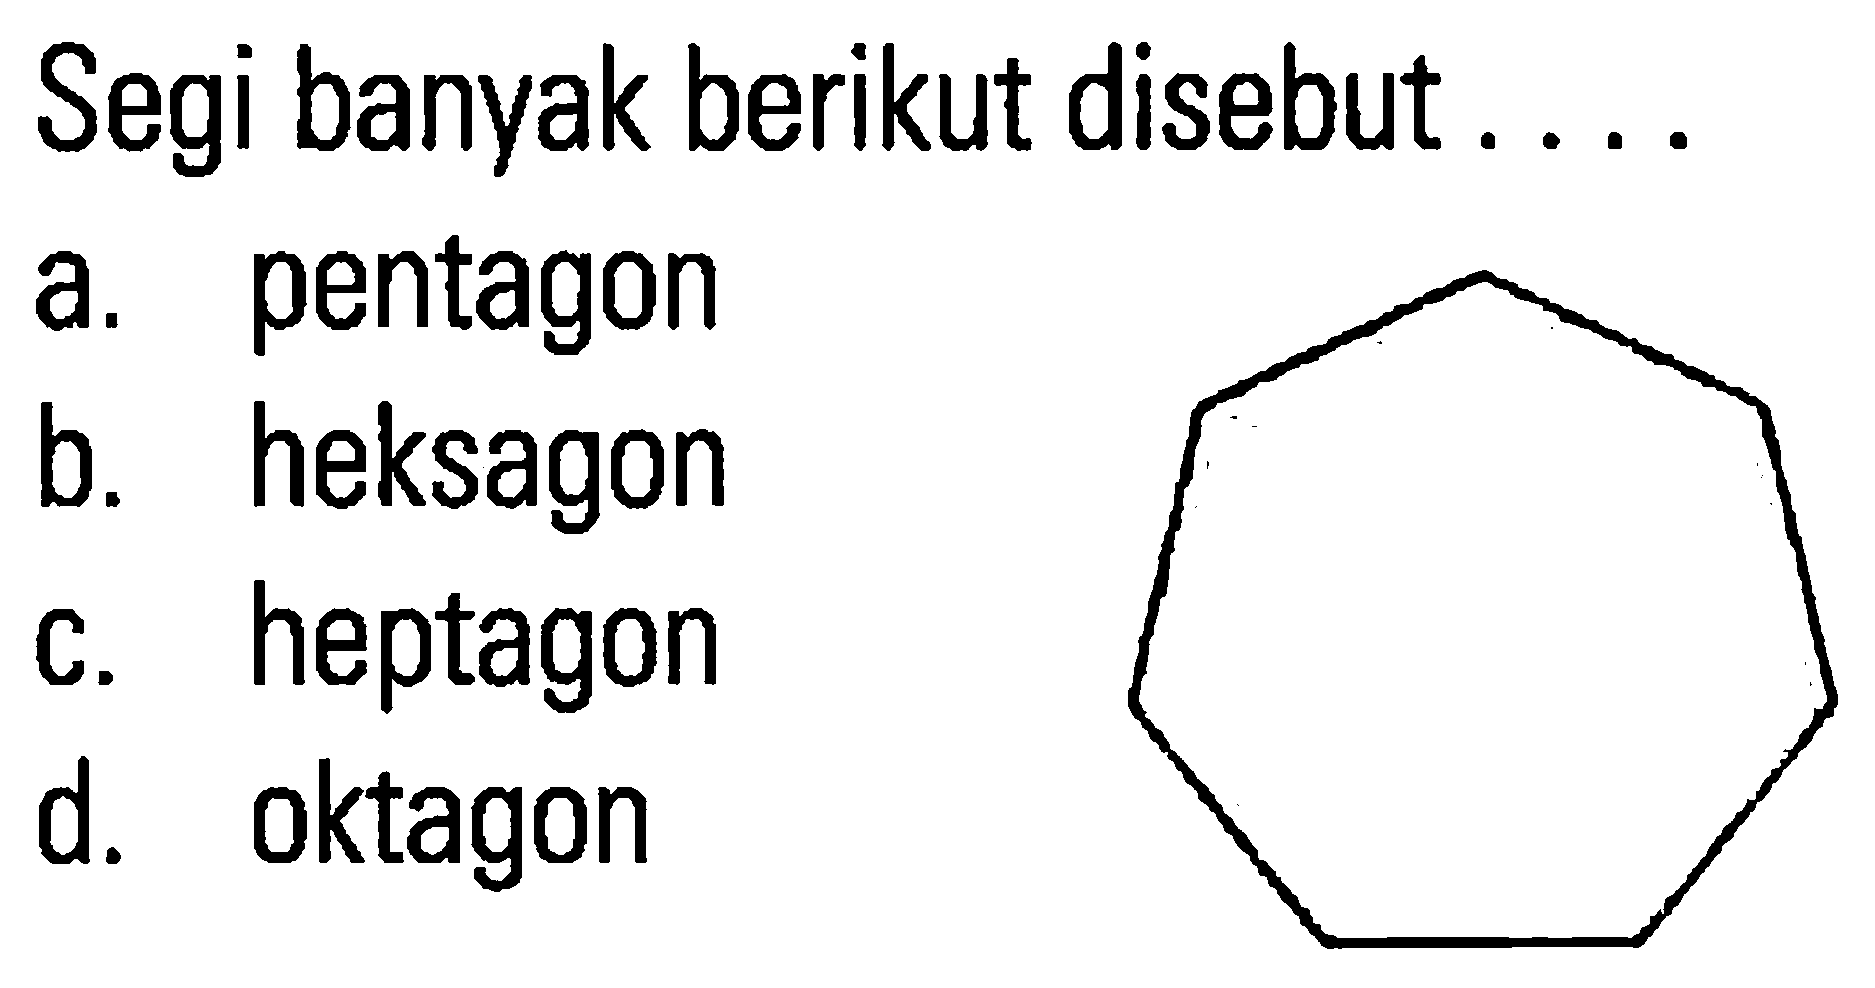 Segi banyak berikut disebut pentagon a. heksagon b. heptagon C. oktagon d.